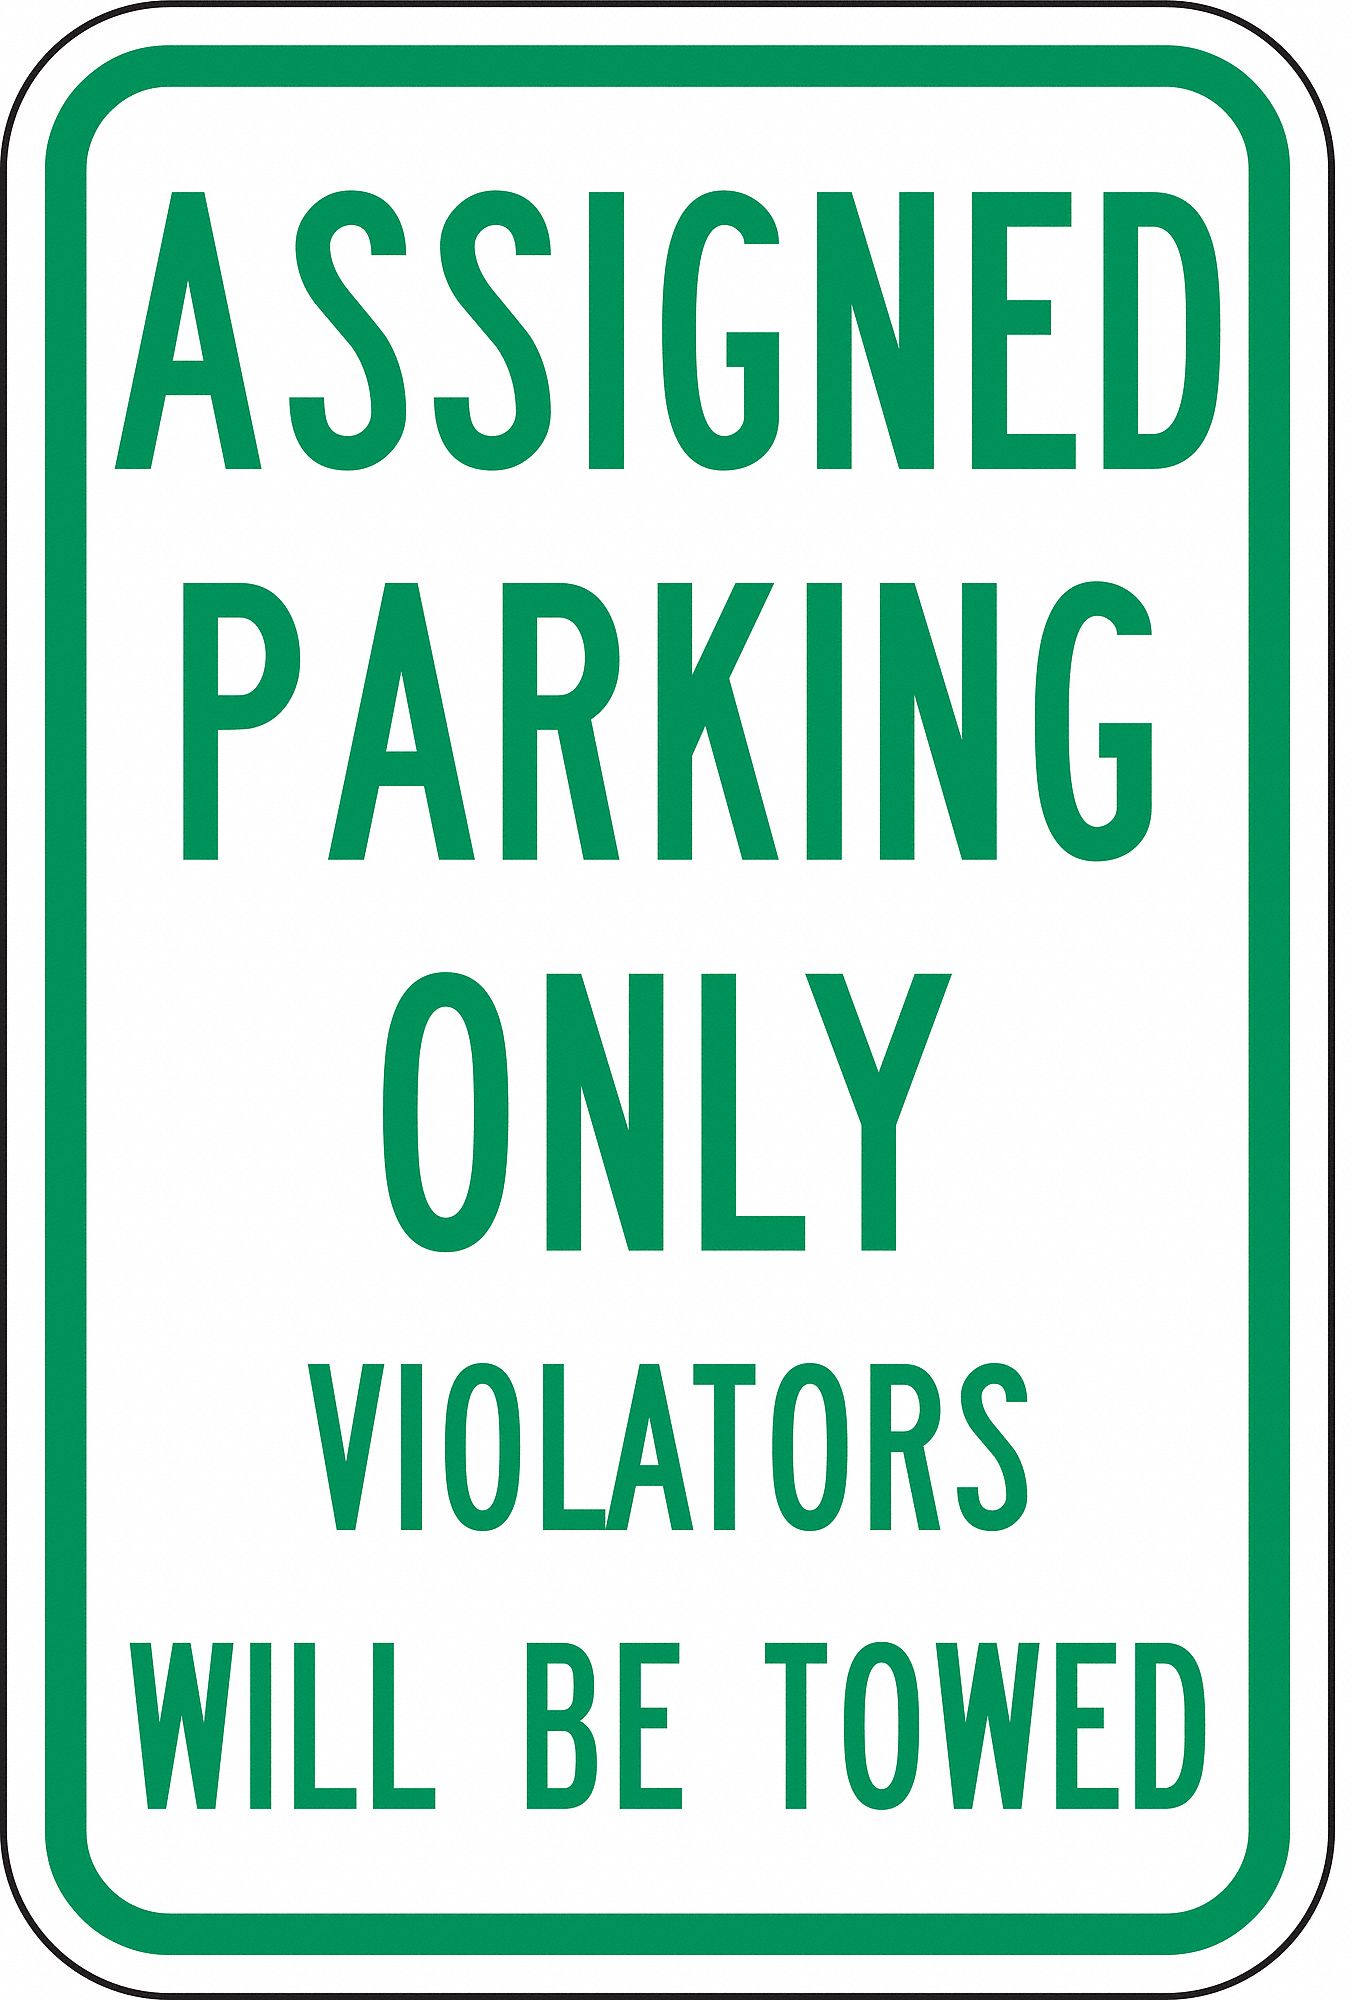 assigned parking spot handicap